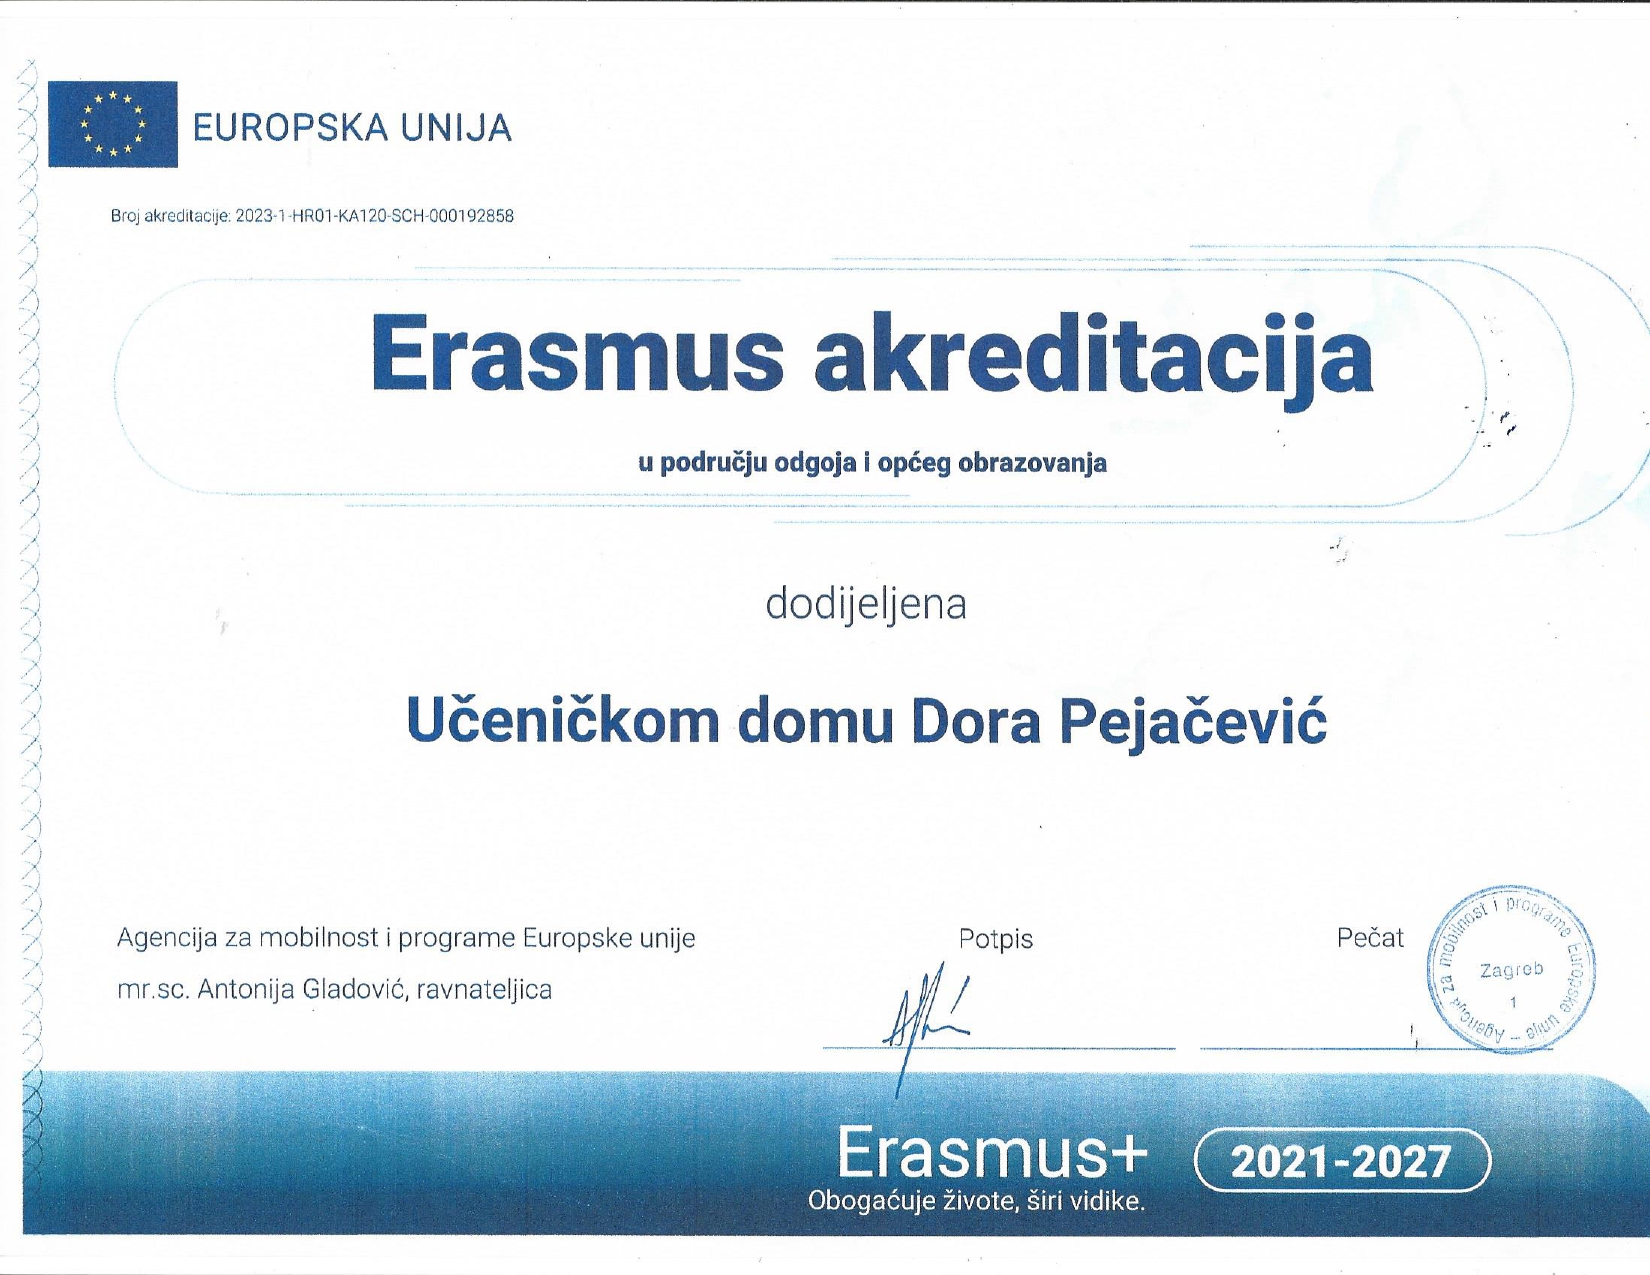 Erasmus akreditacija